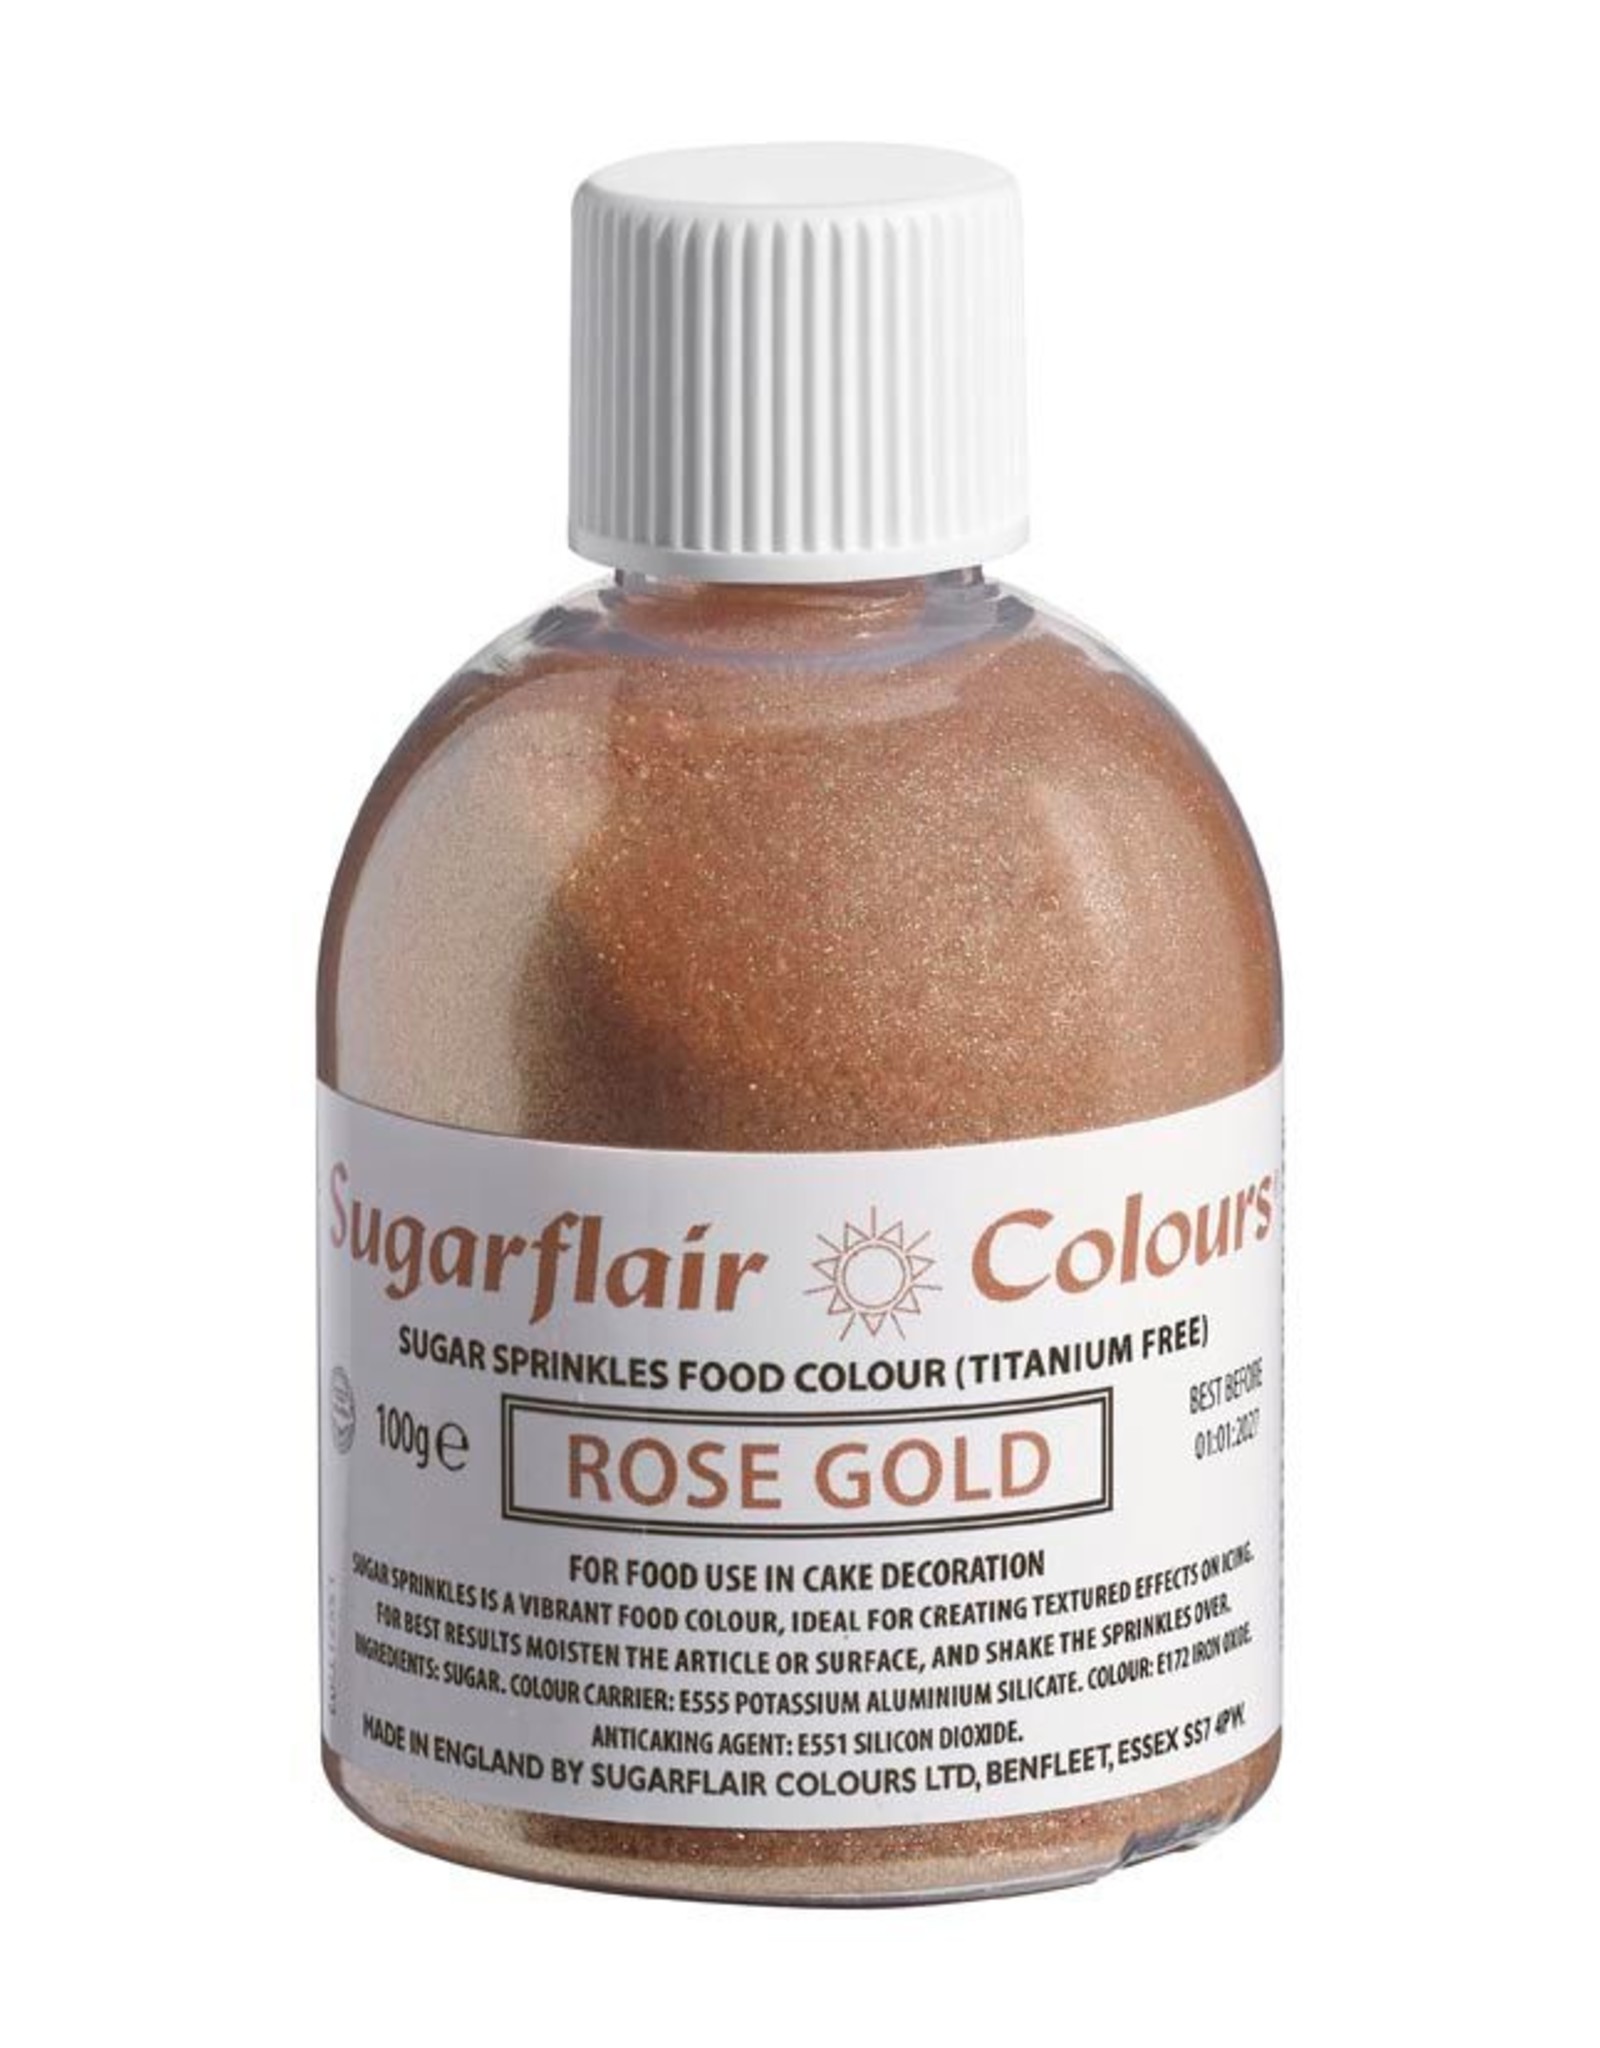 Sugarflair Sugarflair Sugar Sprinkles -Rose Gold- E171 Free 100g